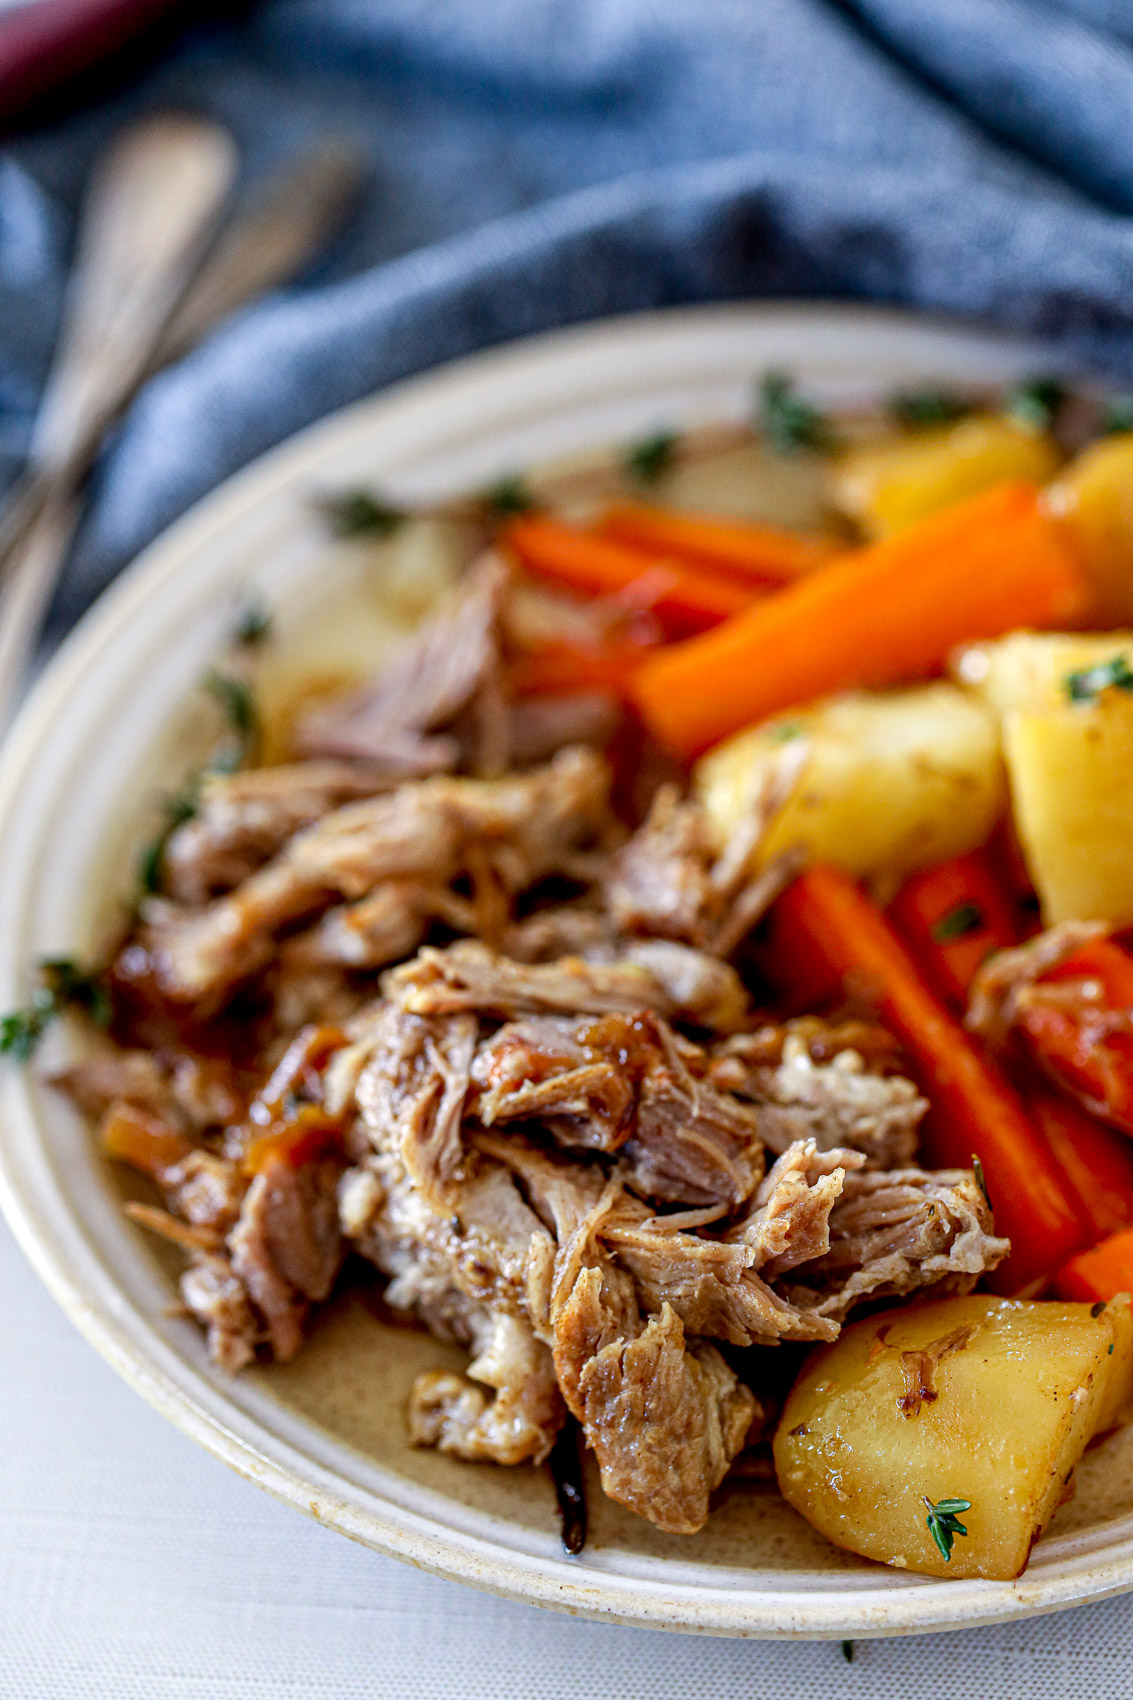 plate with potatoes, carrots and pork roast with savory onion glaze